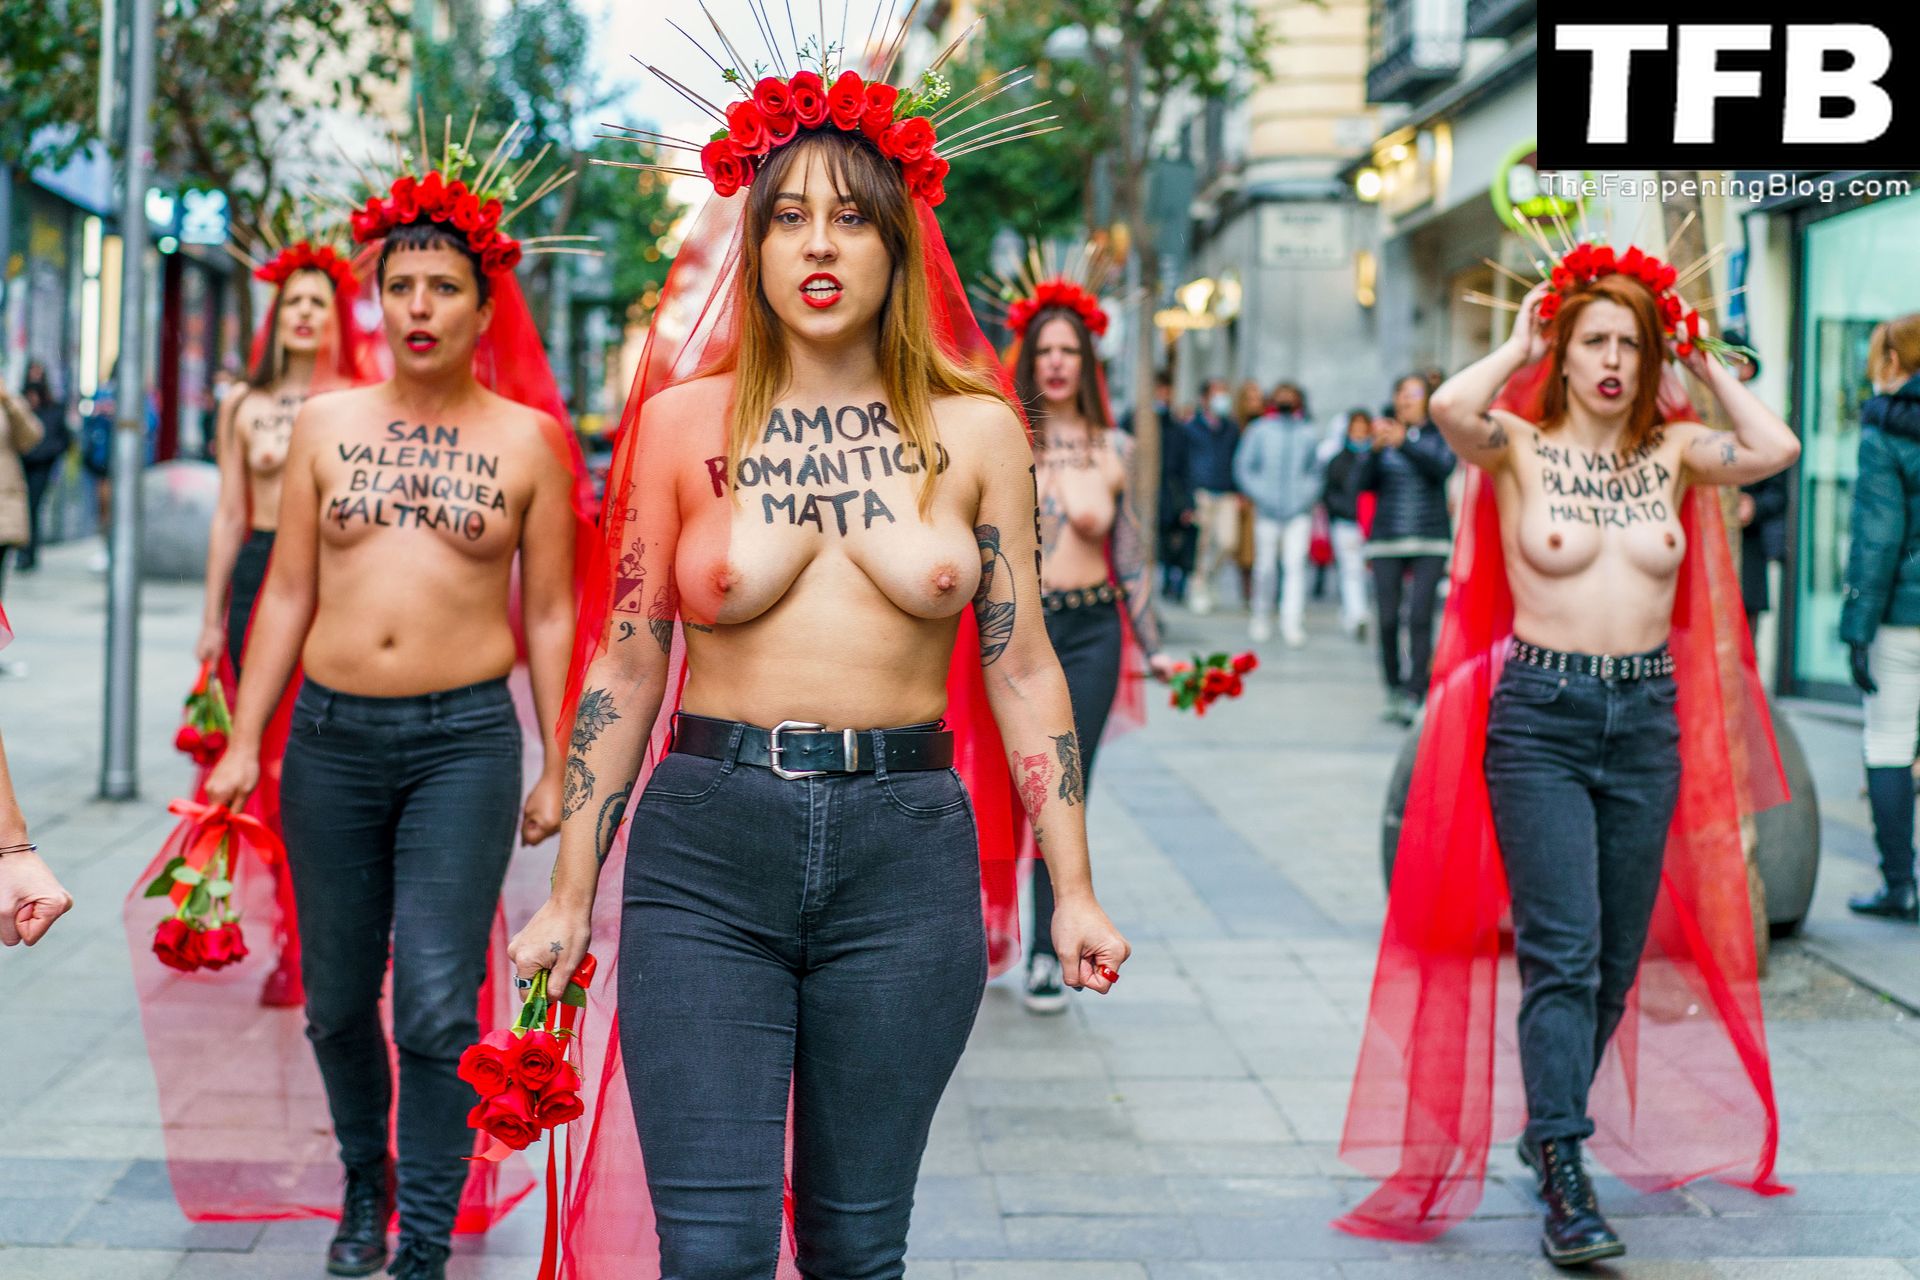 FEMEN-Topless-Girls-The-Fappening-Blog-10.jpg